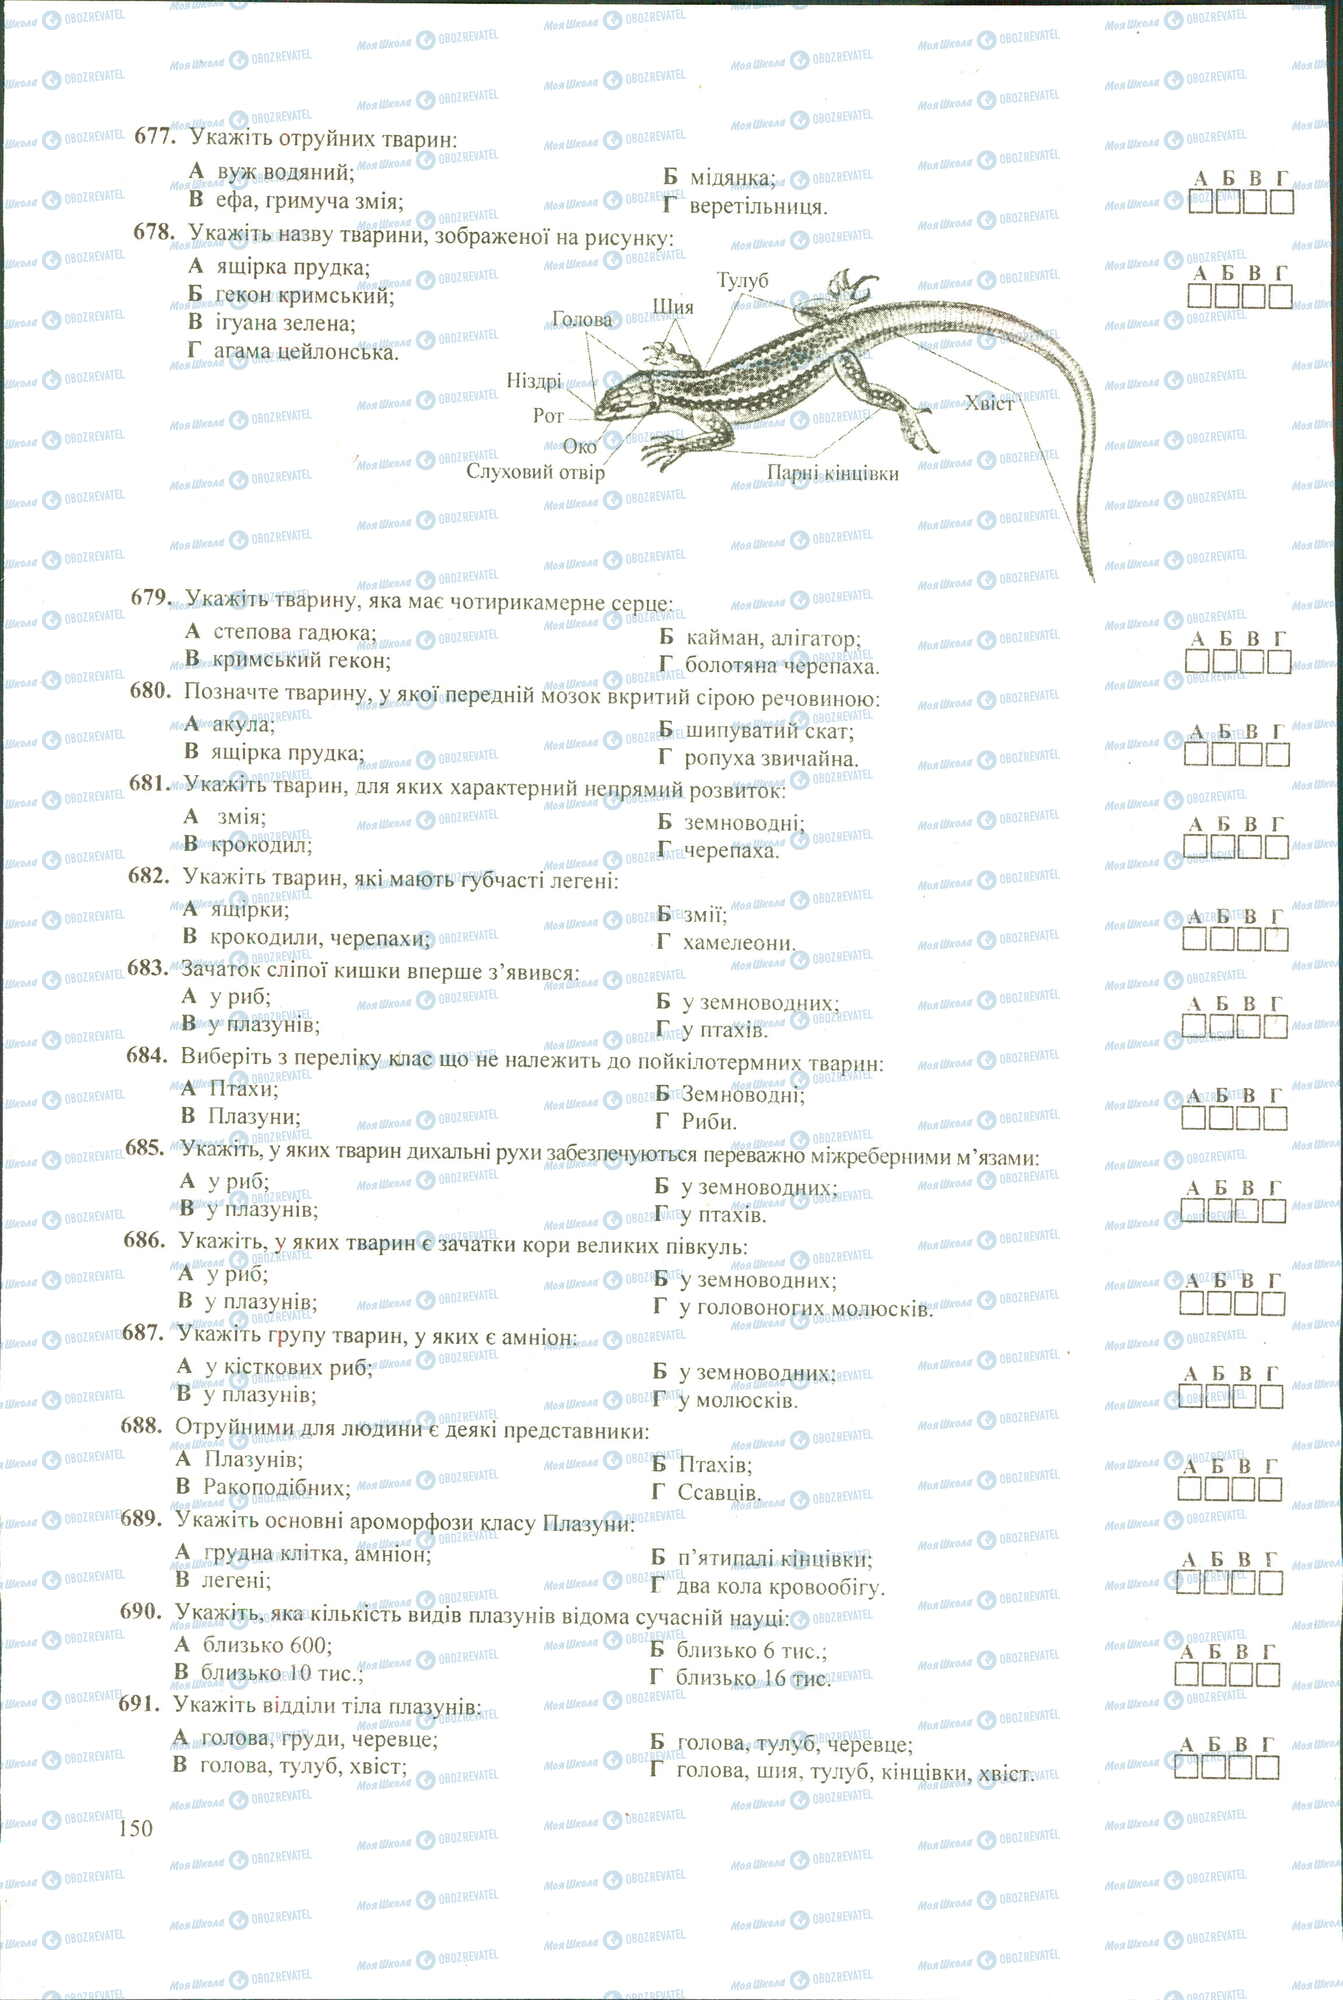 ЗНО Биология 11 класс страница 677-691